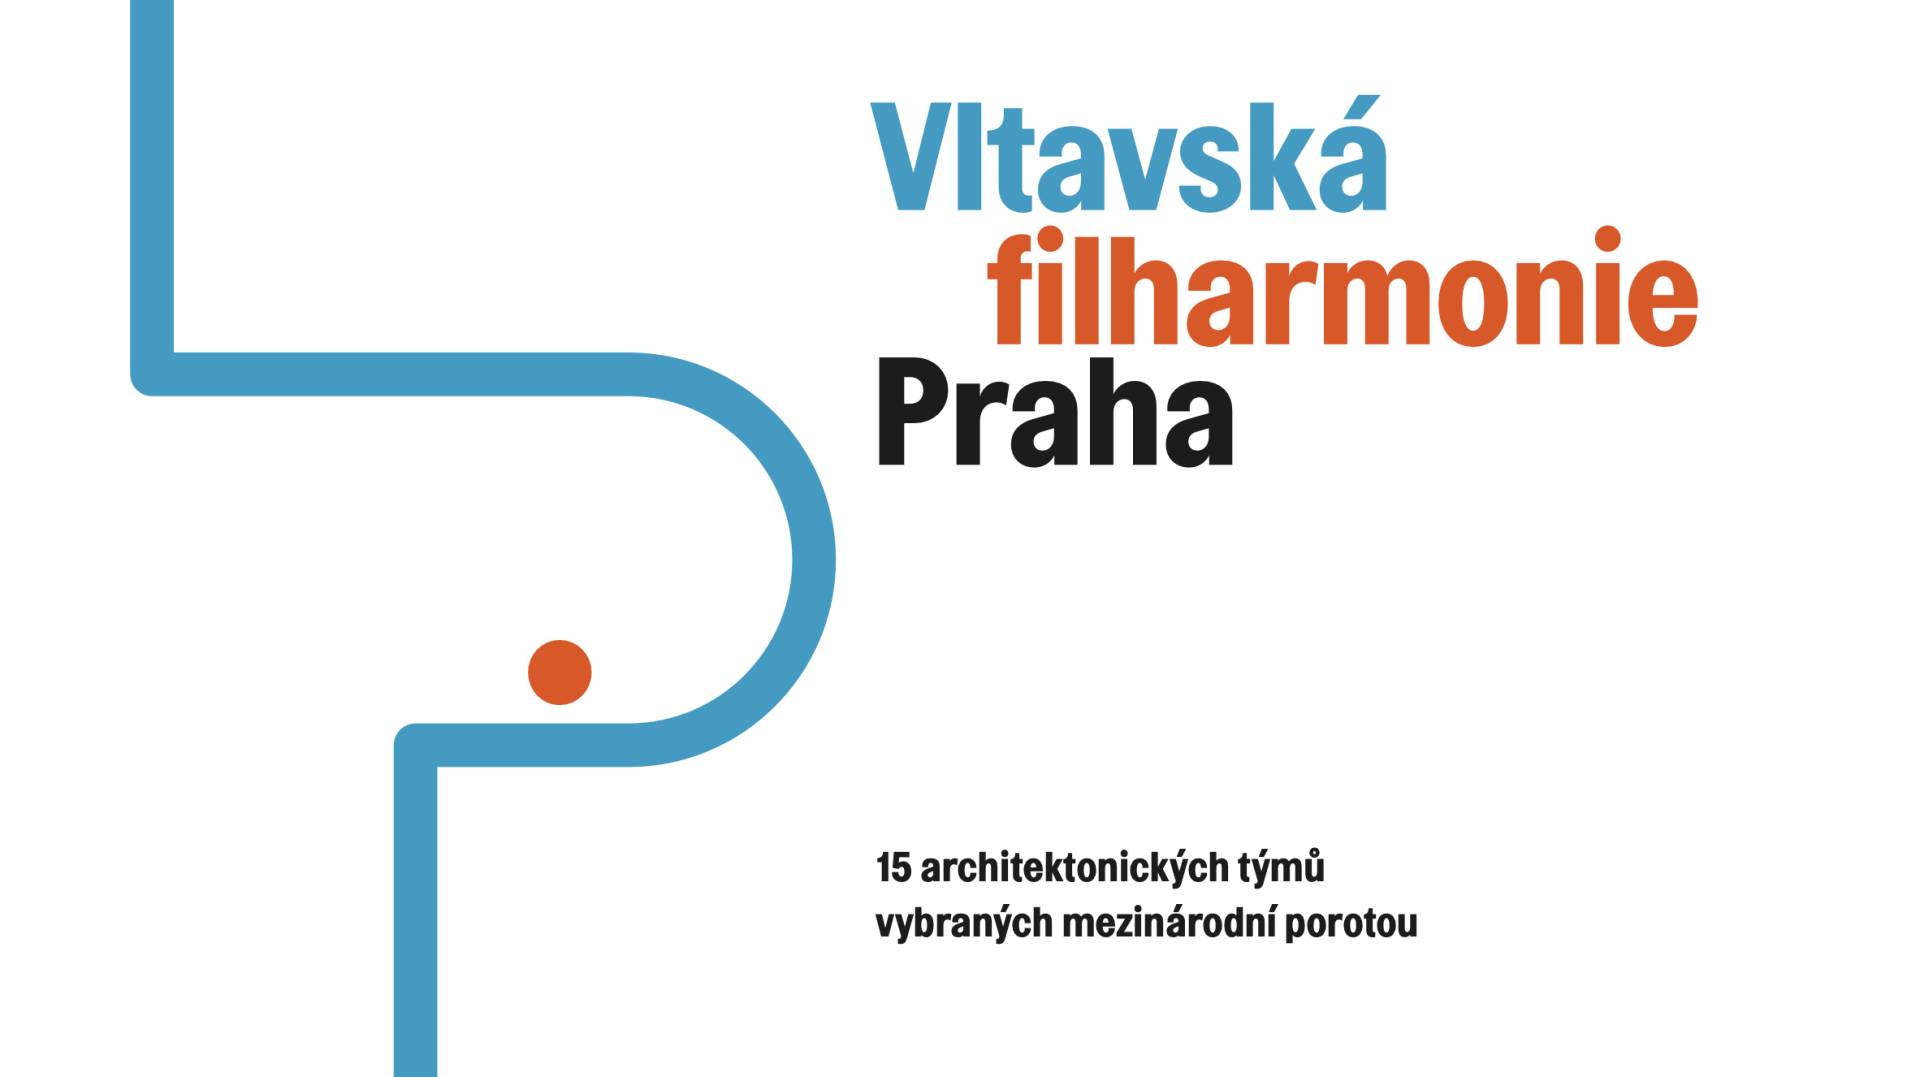 Vltavska filharmonie1